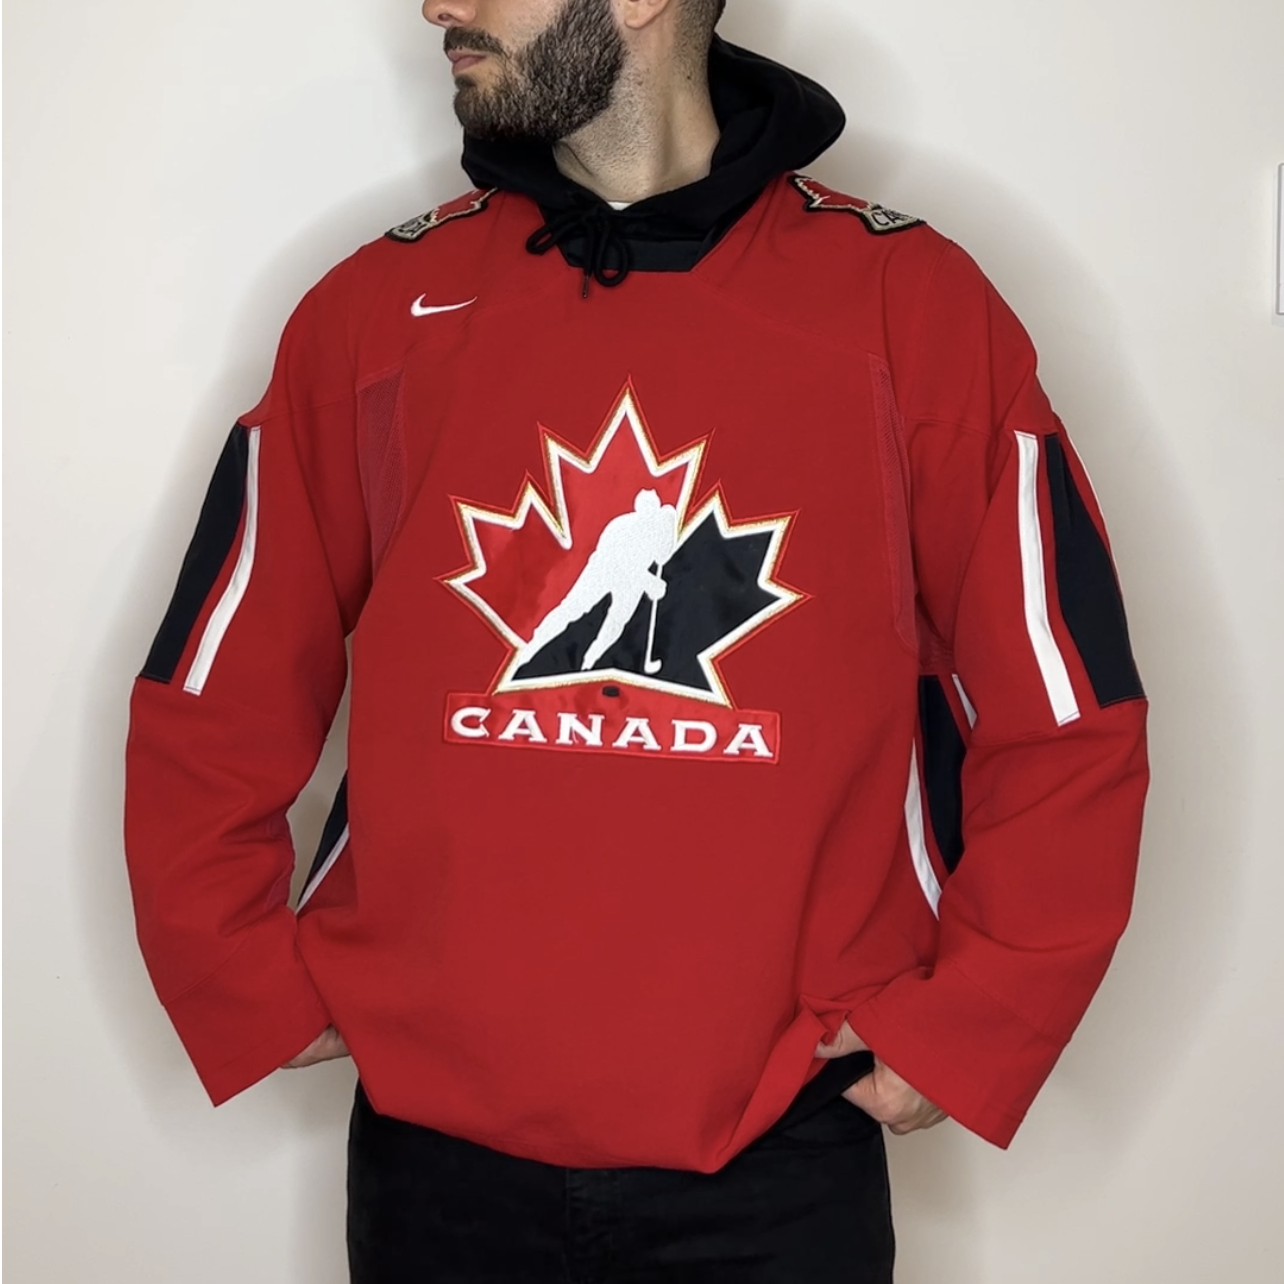 Canada Hockey Nike Jersey